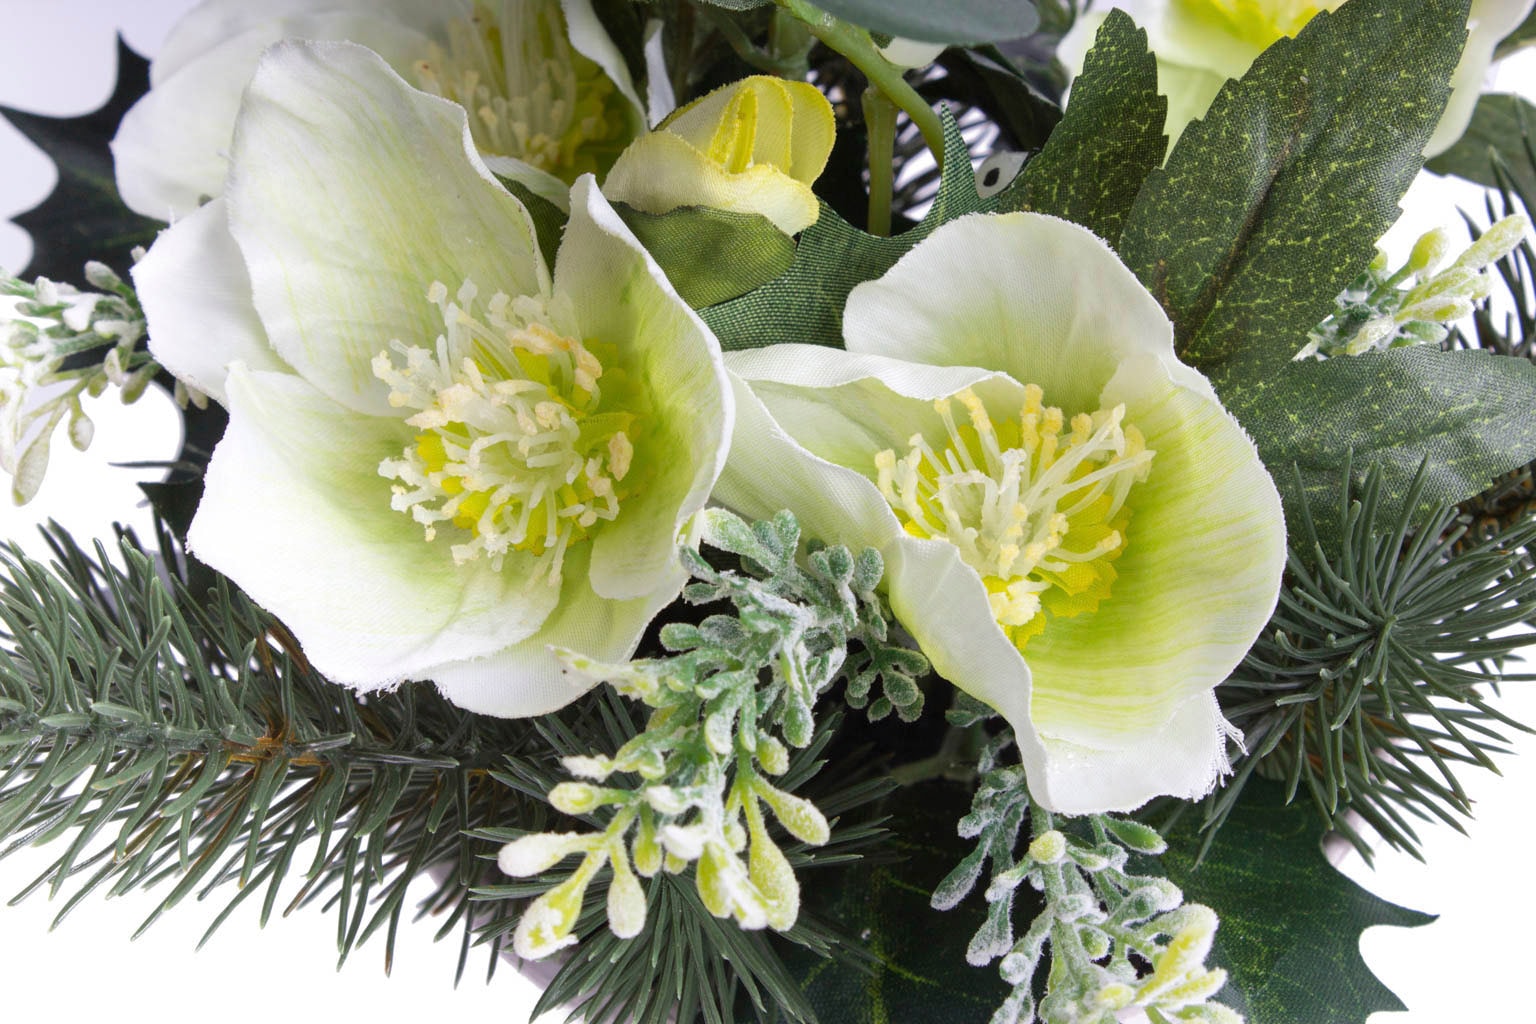 Botanic-Haus Künstliche Zimmerpflanze »Christrosen-Tannen-Arrangement im  Topf« auf Raten bestellen